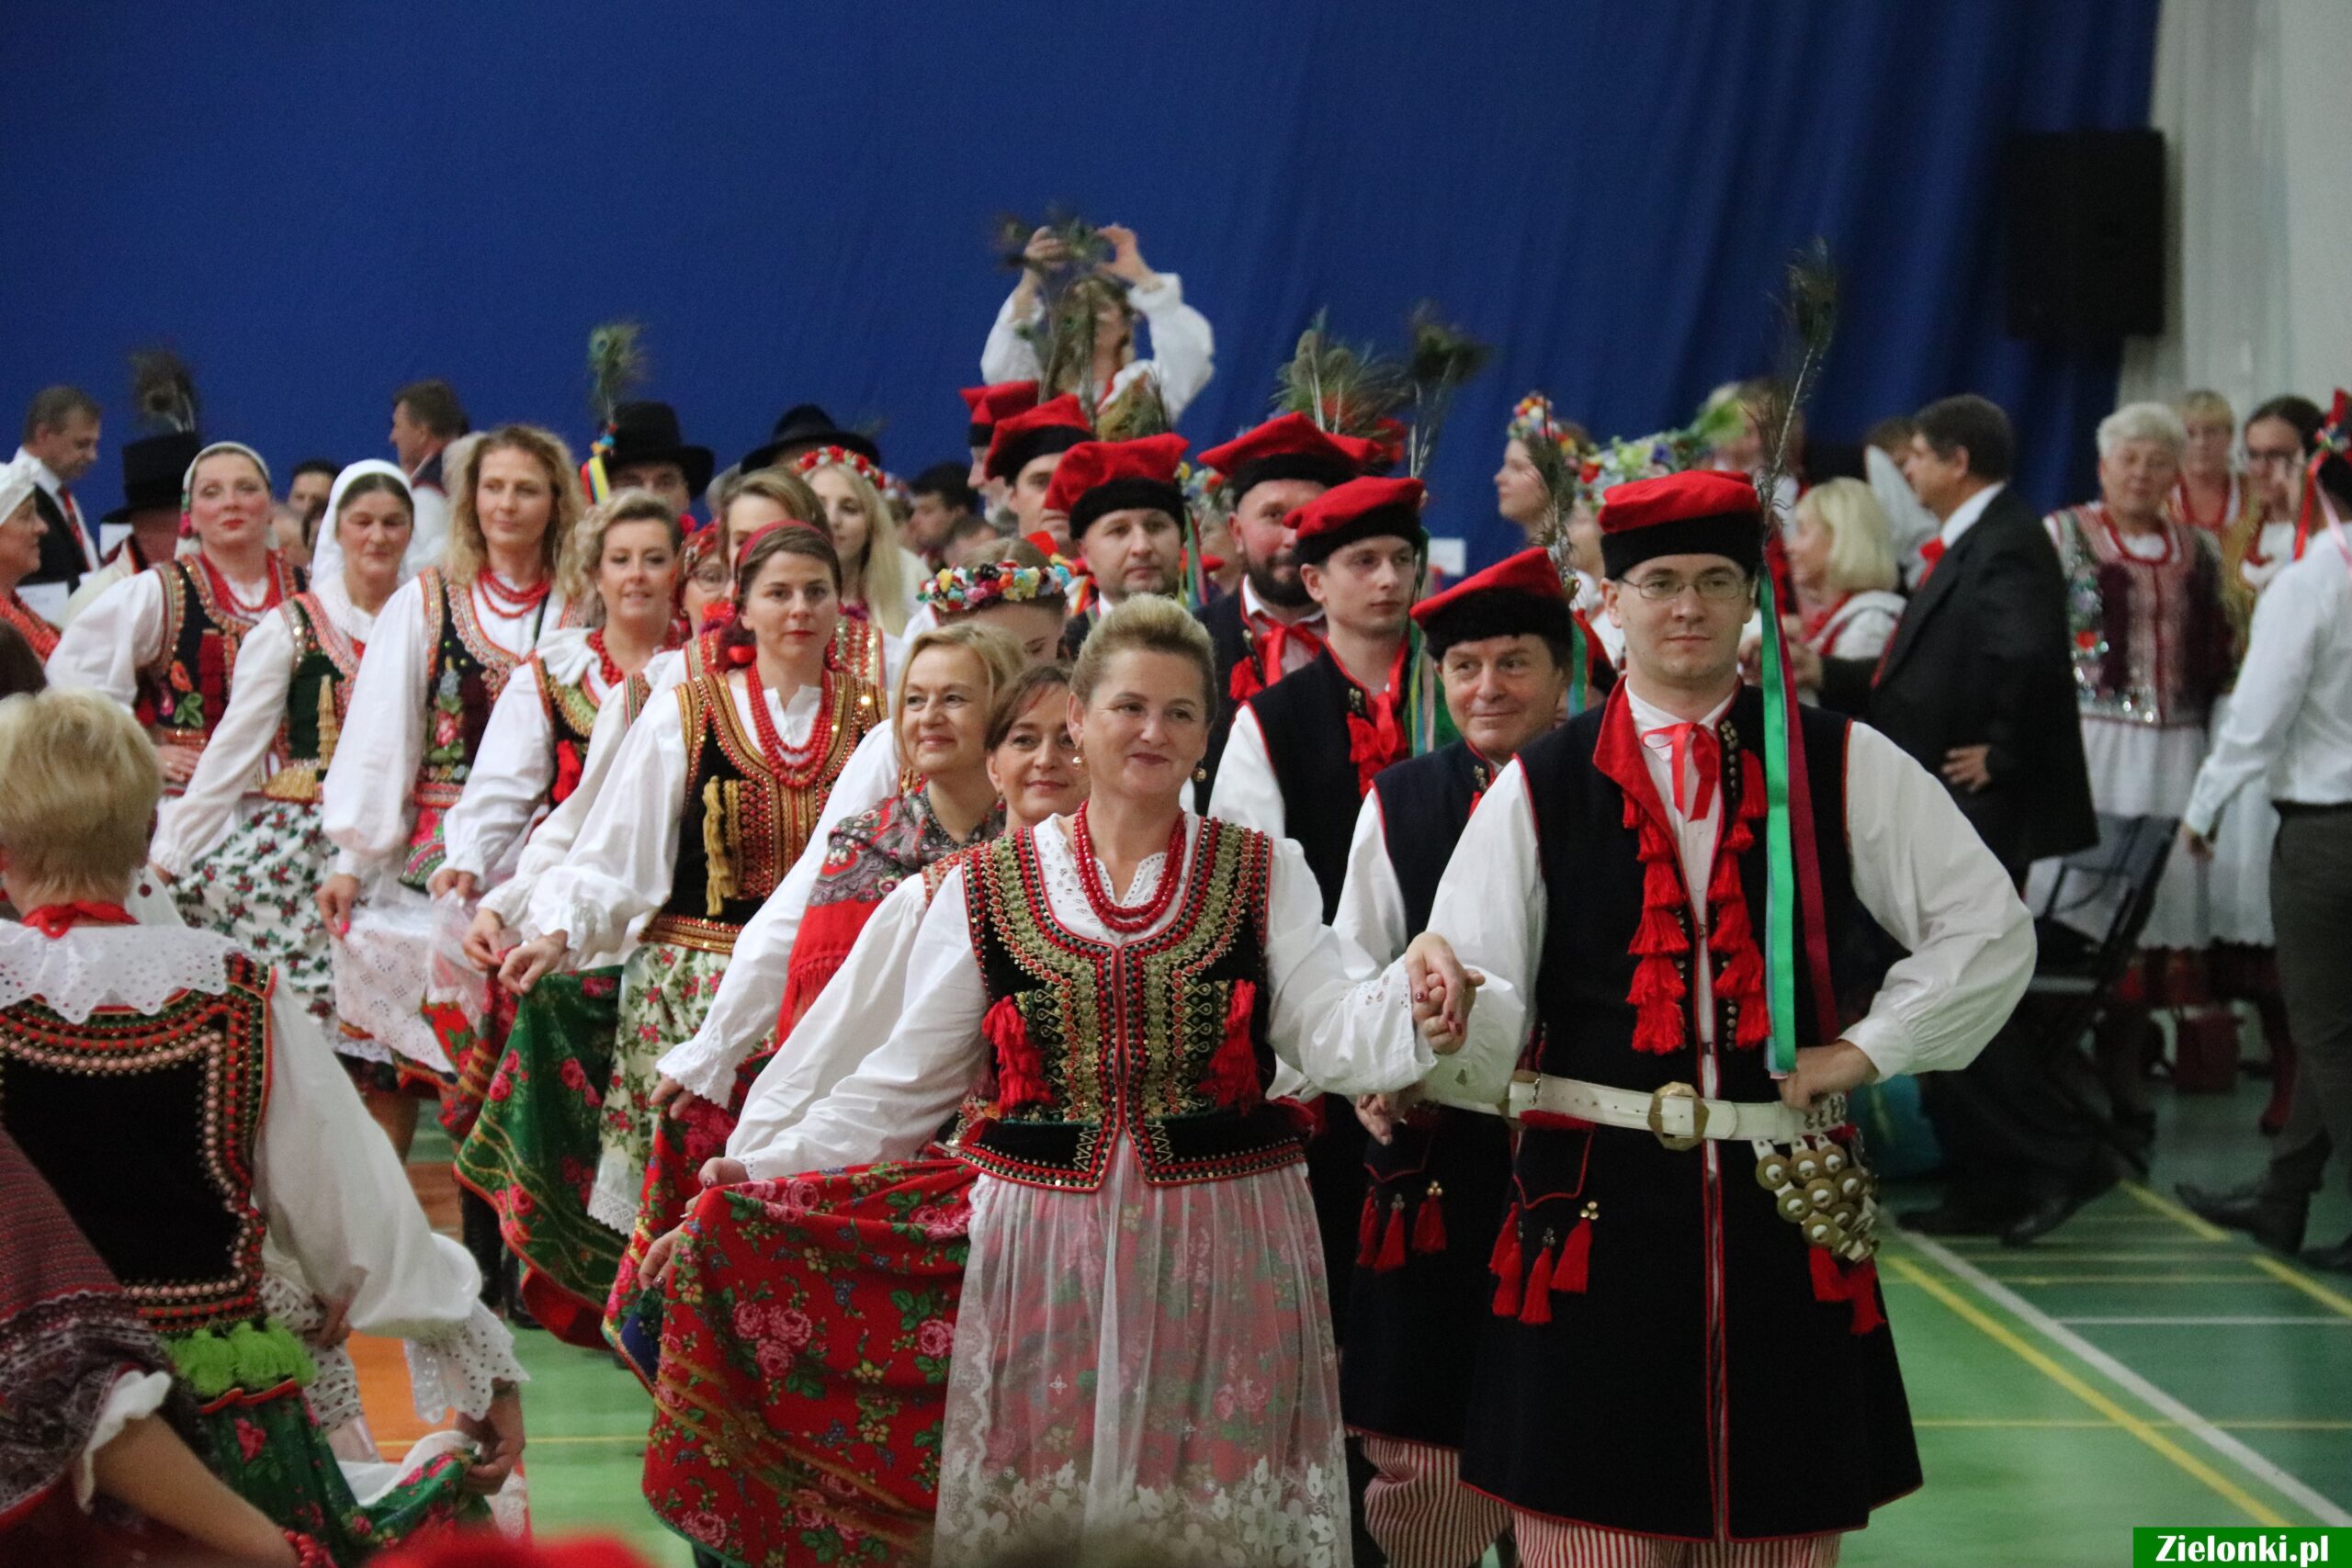 Wspaniała atmosfera i piękne ubiory – miłośnicy Stroju Krakowskiego już po raz drugi spotkali się w Zielonkach